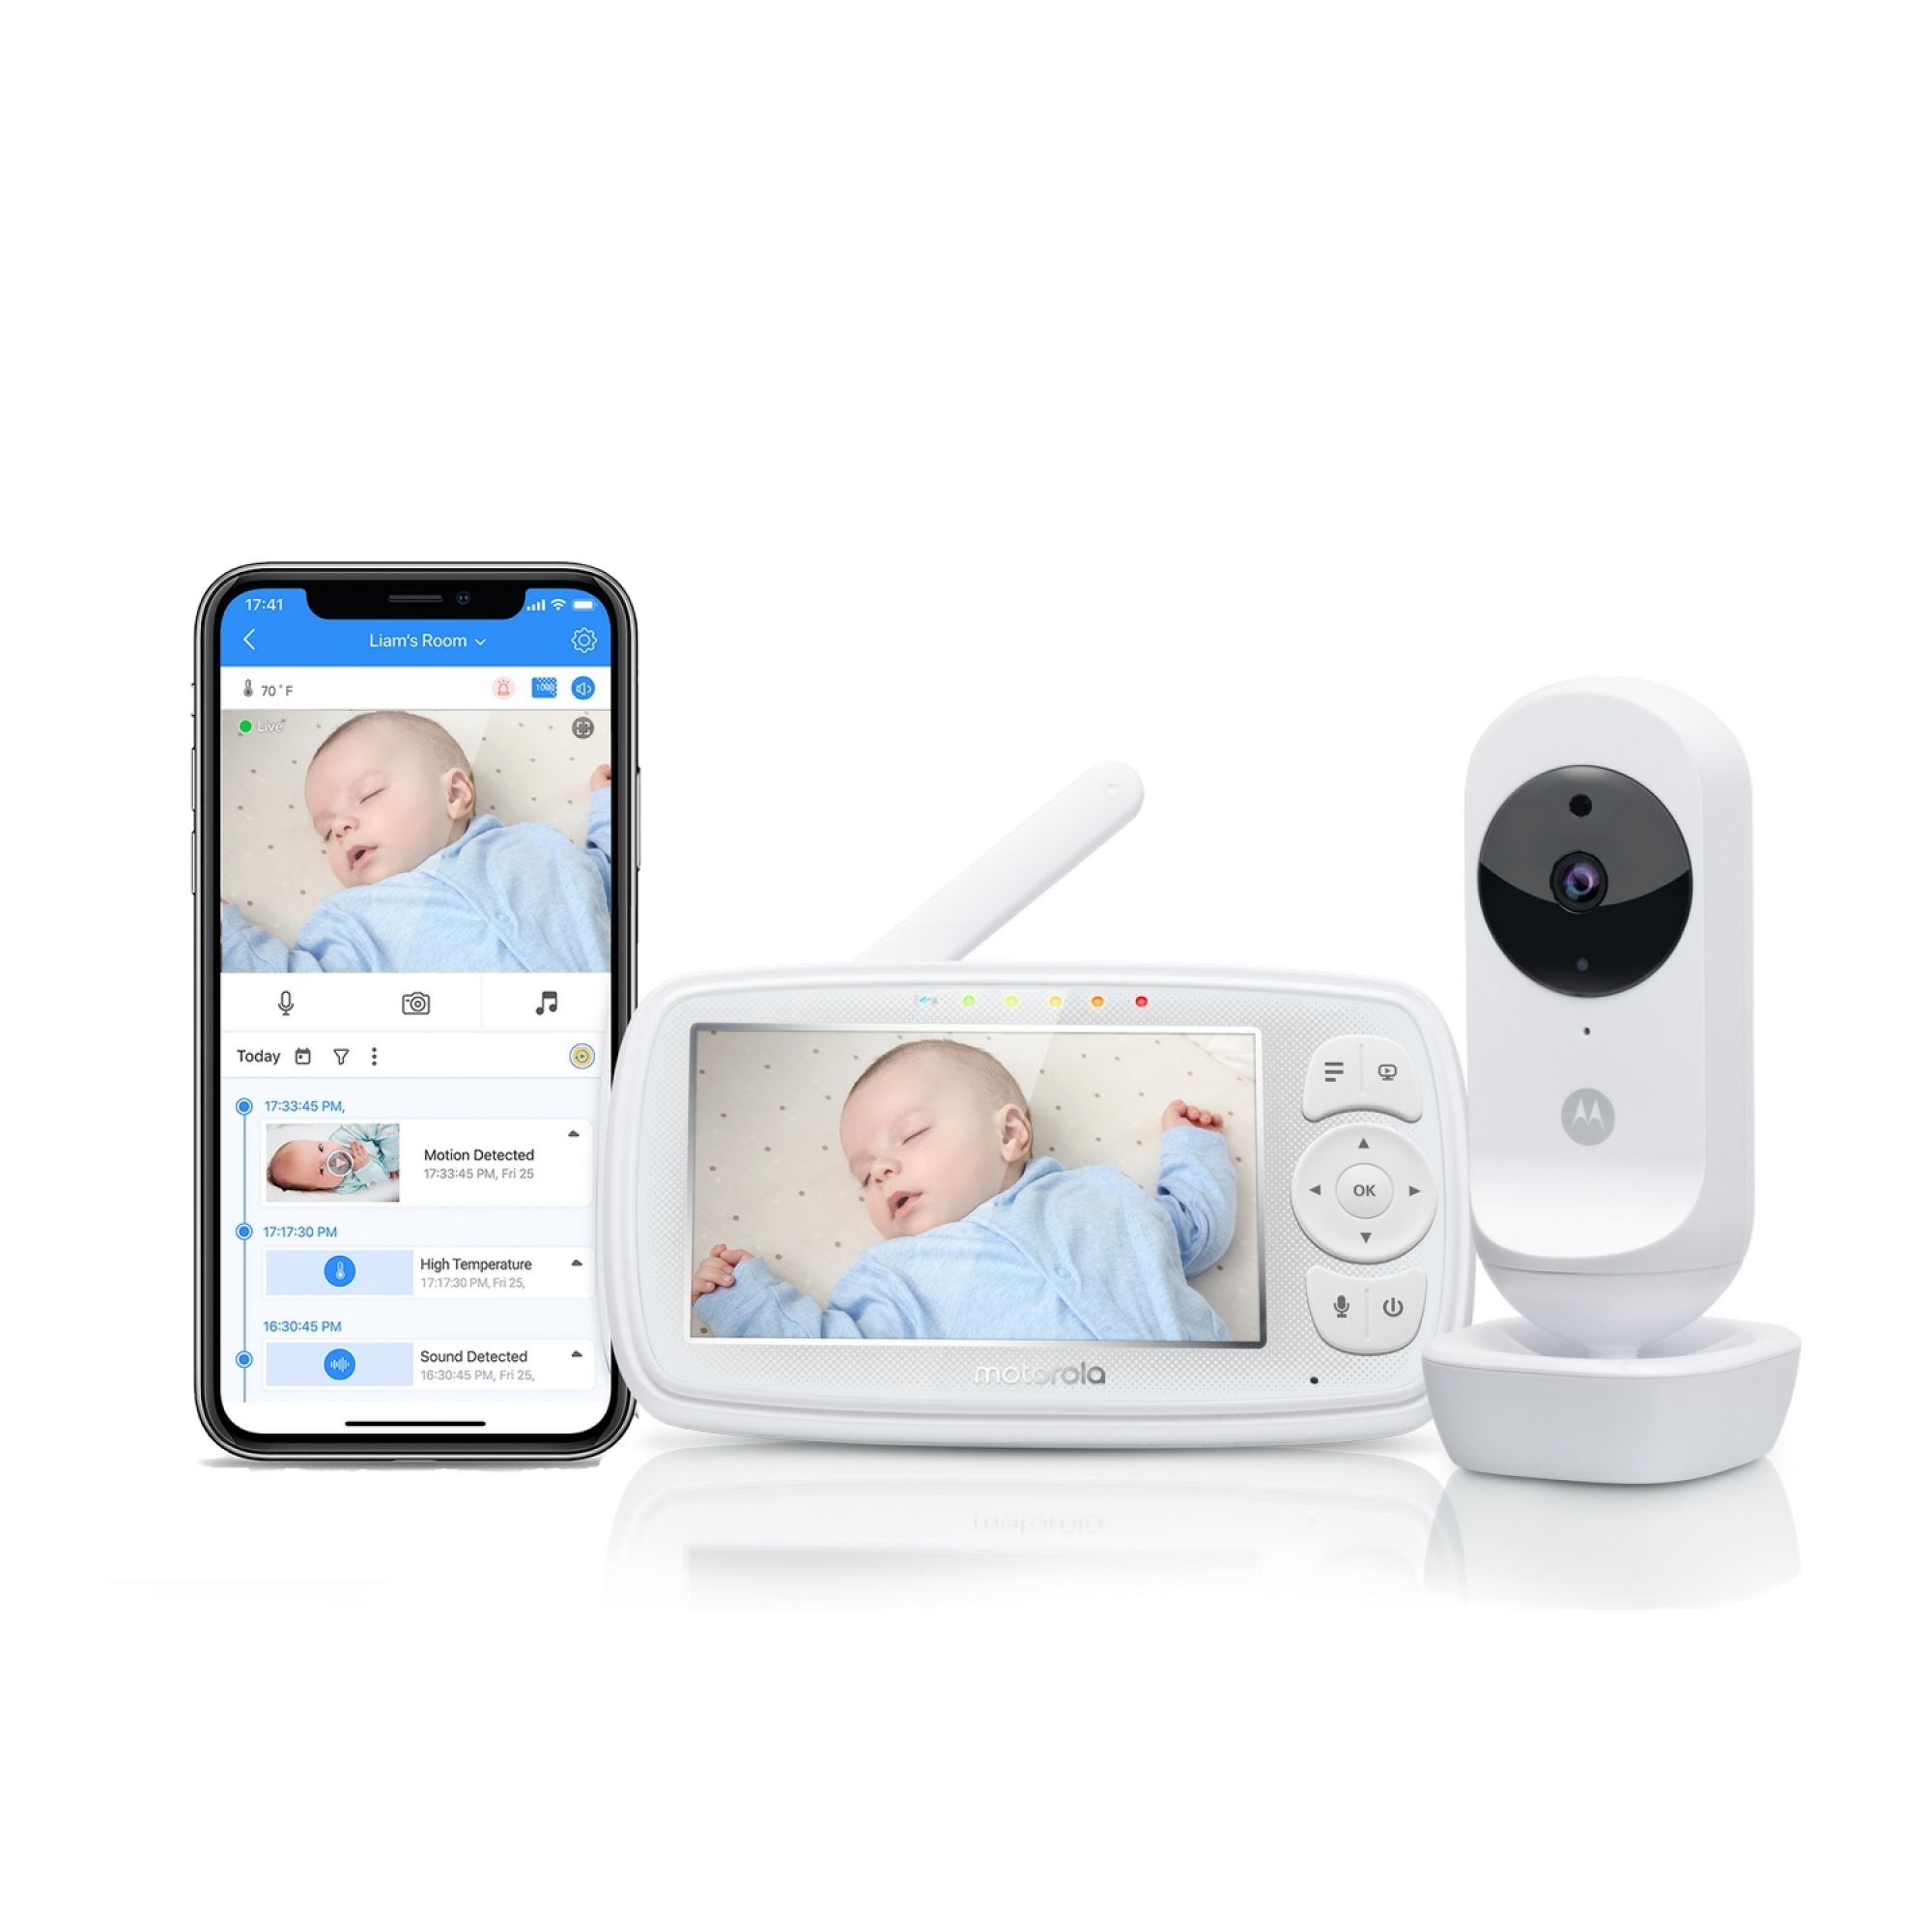 Babyphone VS Caméra : quoi choisir pour l'arrivée de bébé ? - A la Une!